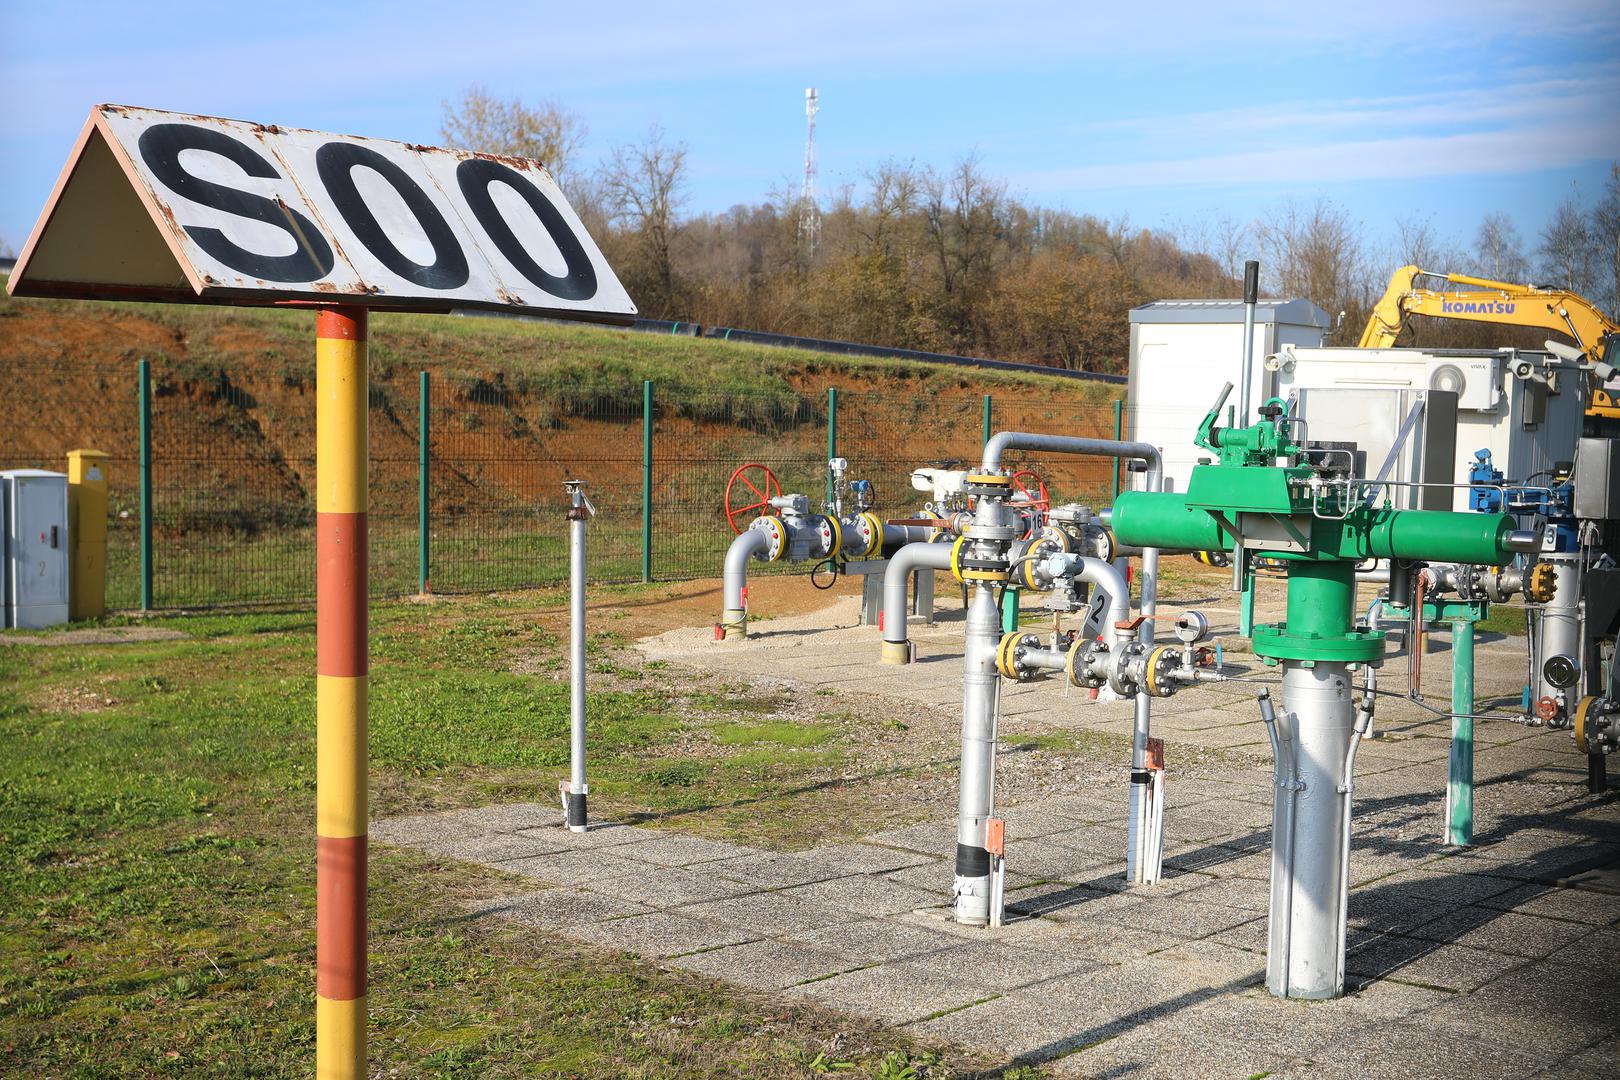 Radovi na izgradnji plinovoda Zlobin - Bosiljevo, dužine 58 kilometara i vrijednosti 155 milijuna eura, idu predviđenom dinamikom i trebali bi biti završeni u planiranom roku, a plinovod pušten u rad tijekom 2025. godine, priopćili su u četvrtak iz tvrtke Plinacro.